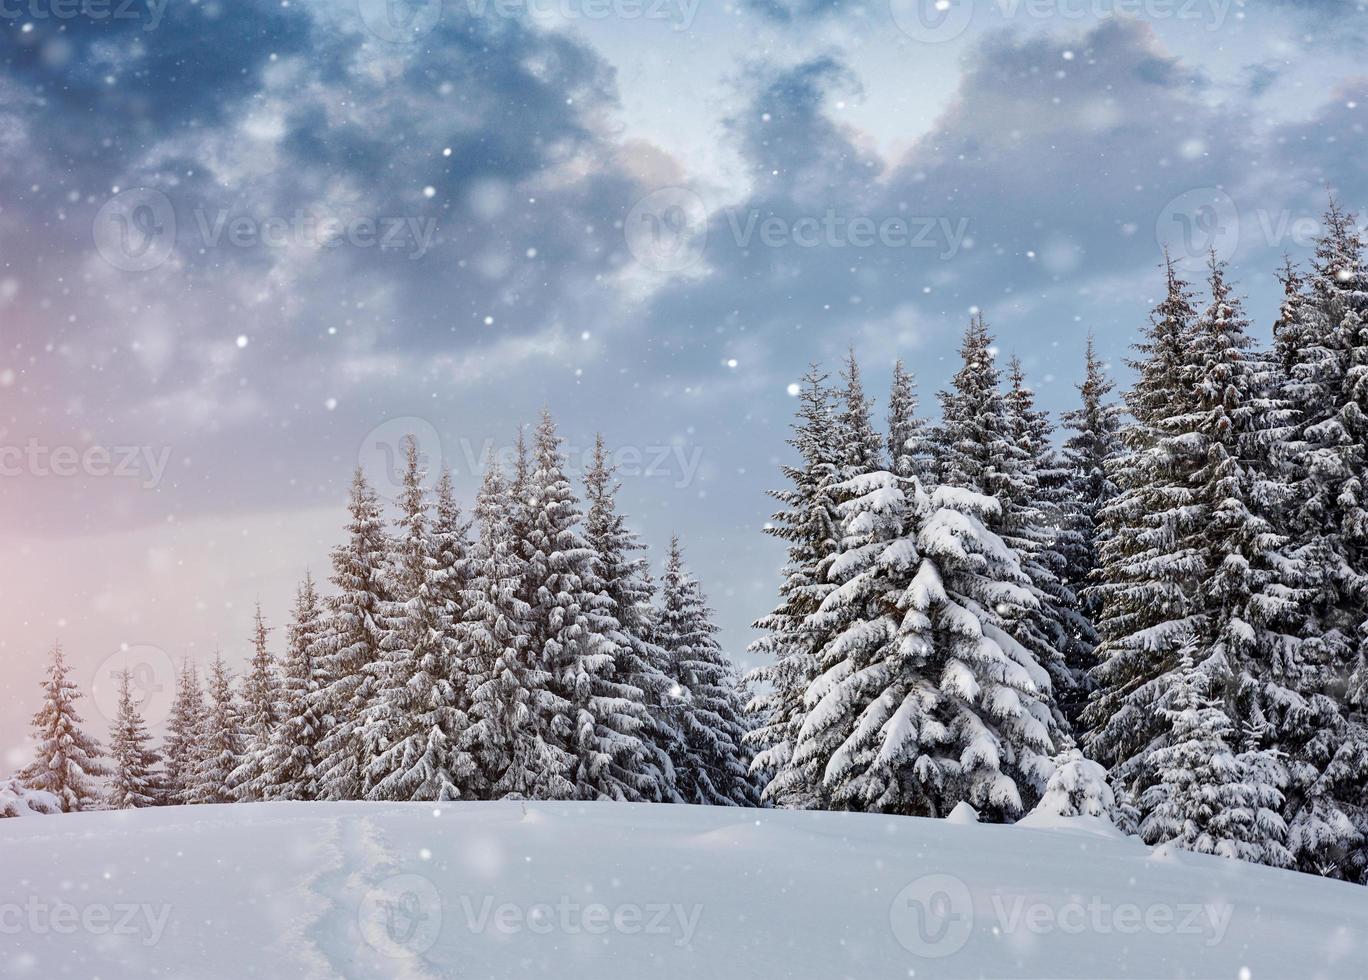 árboles de paisaje invernal y valla en escarcha, fondo con algunos reflejos suaves y copos de nieve. montañas de los Cárpatos, está nevando. ucrania, europa foto